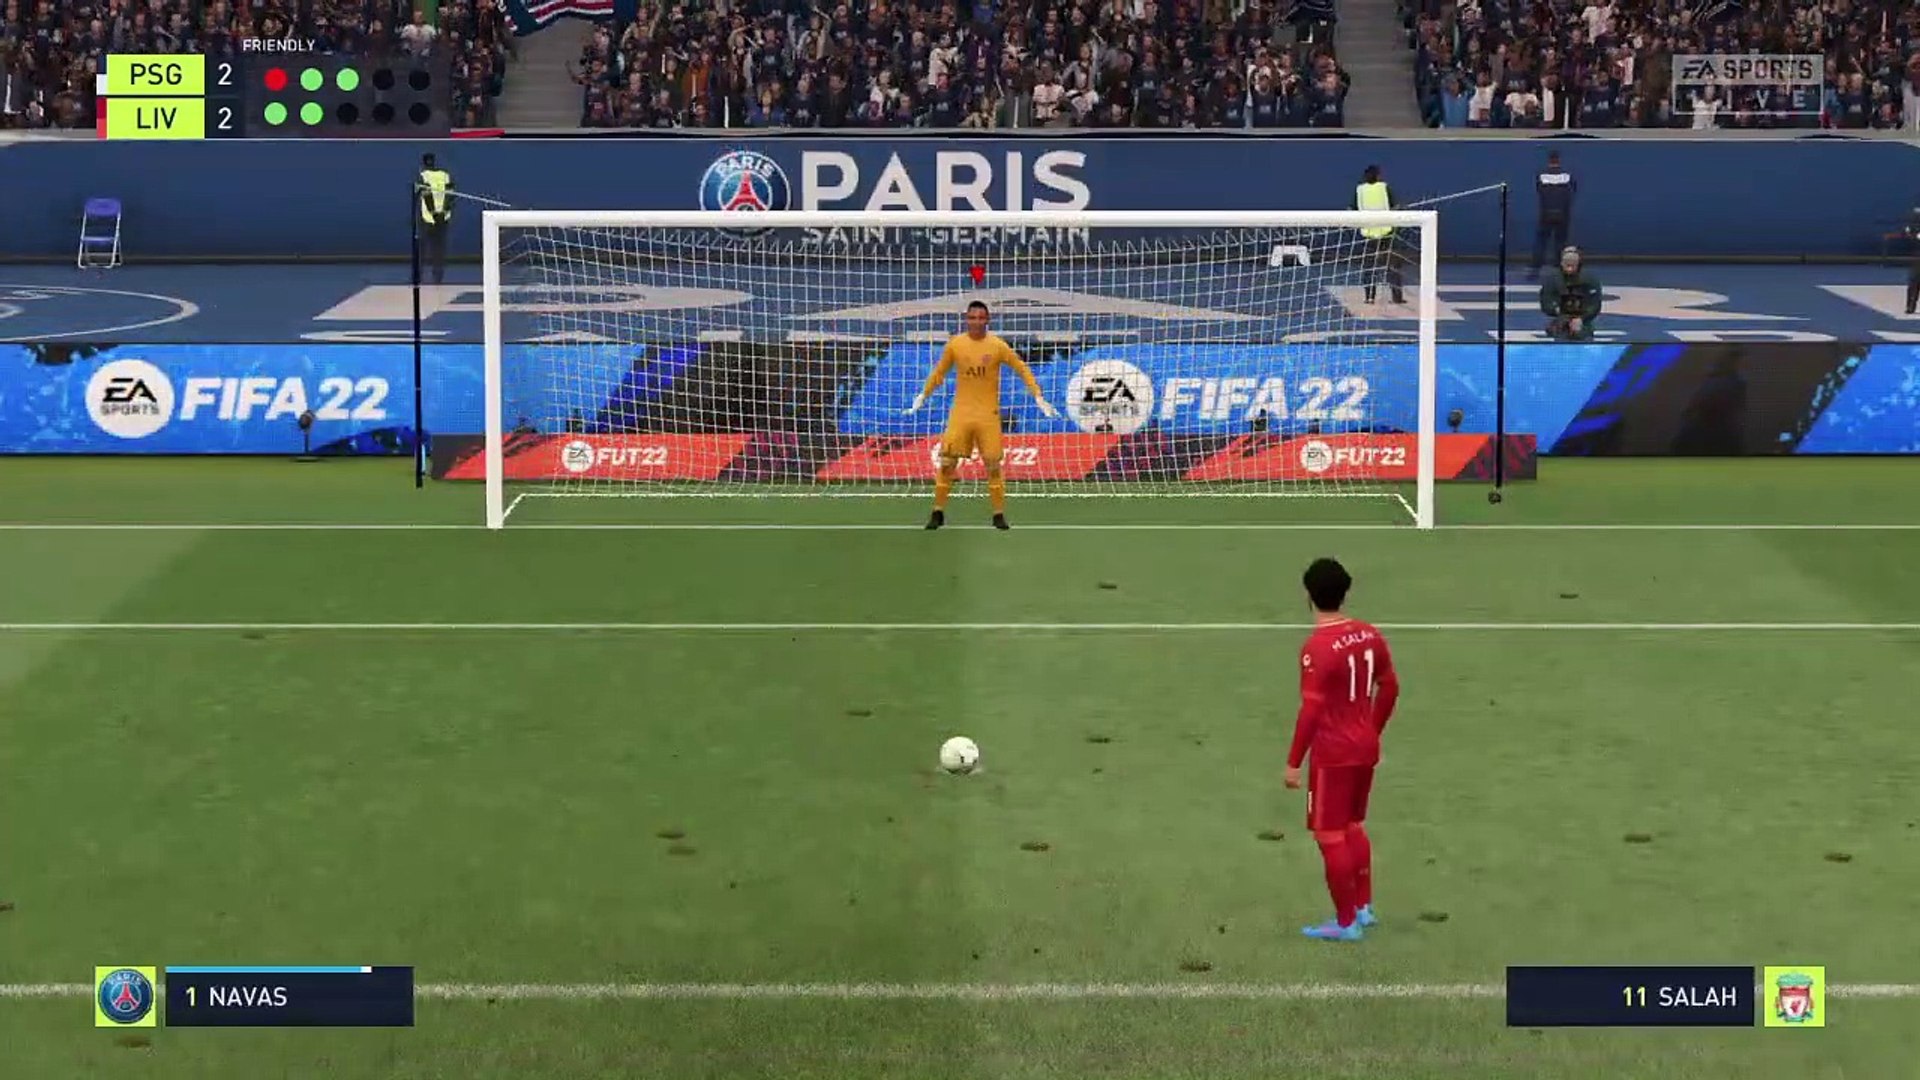 FIFA 22, New * ABBA Penalty shootout